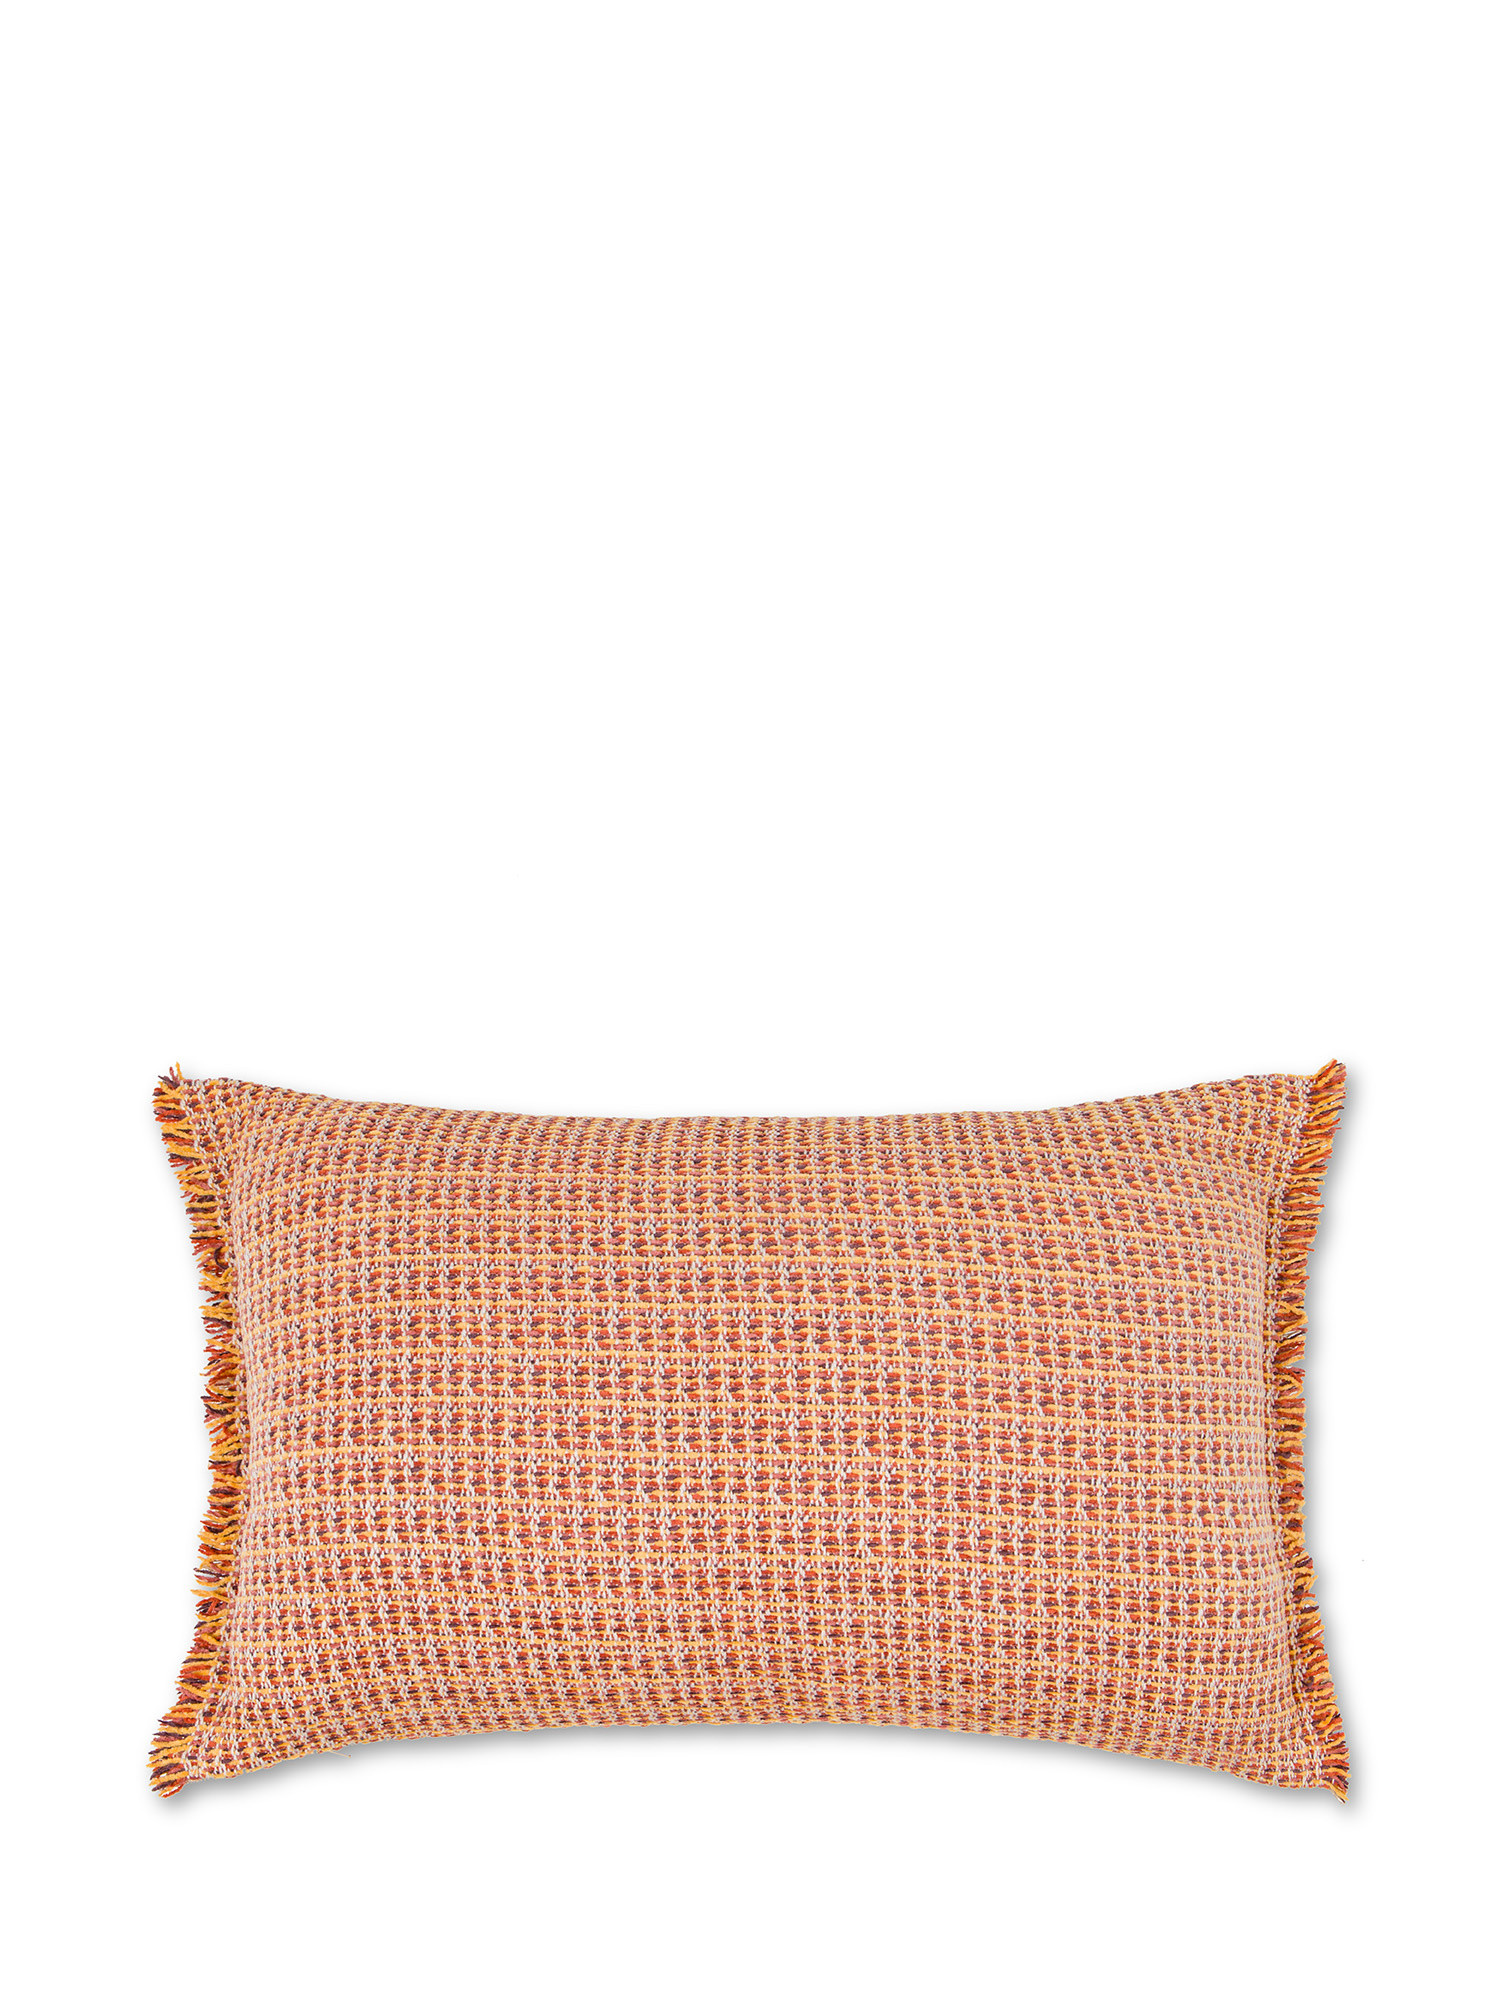 Jacquard knitted cushion with fringes 35X55cm, Orange, large image number 0